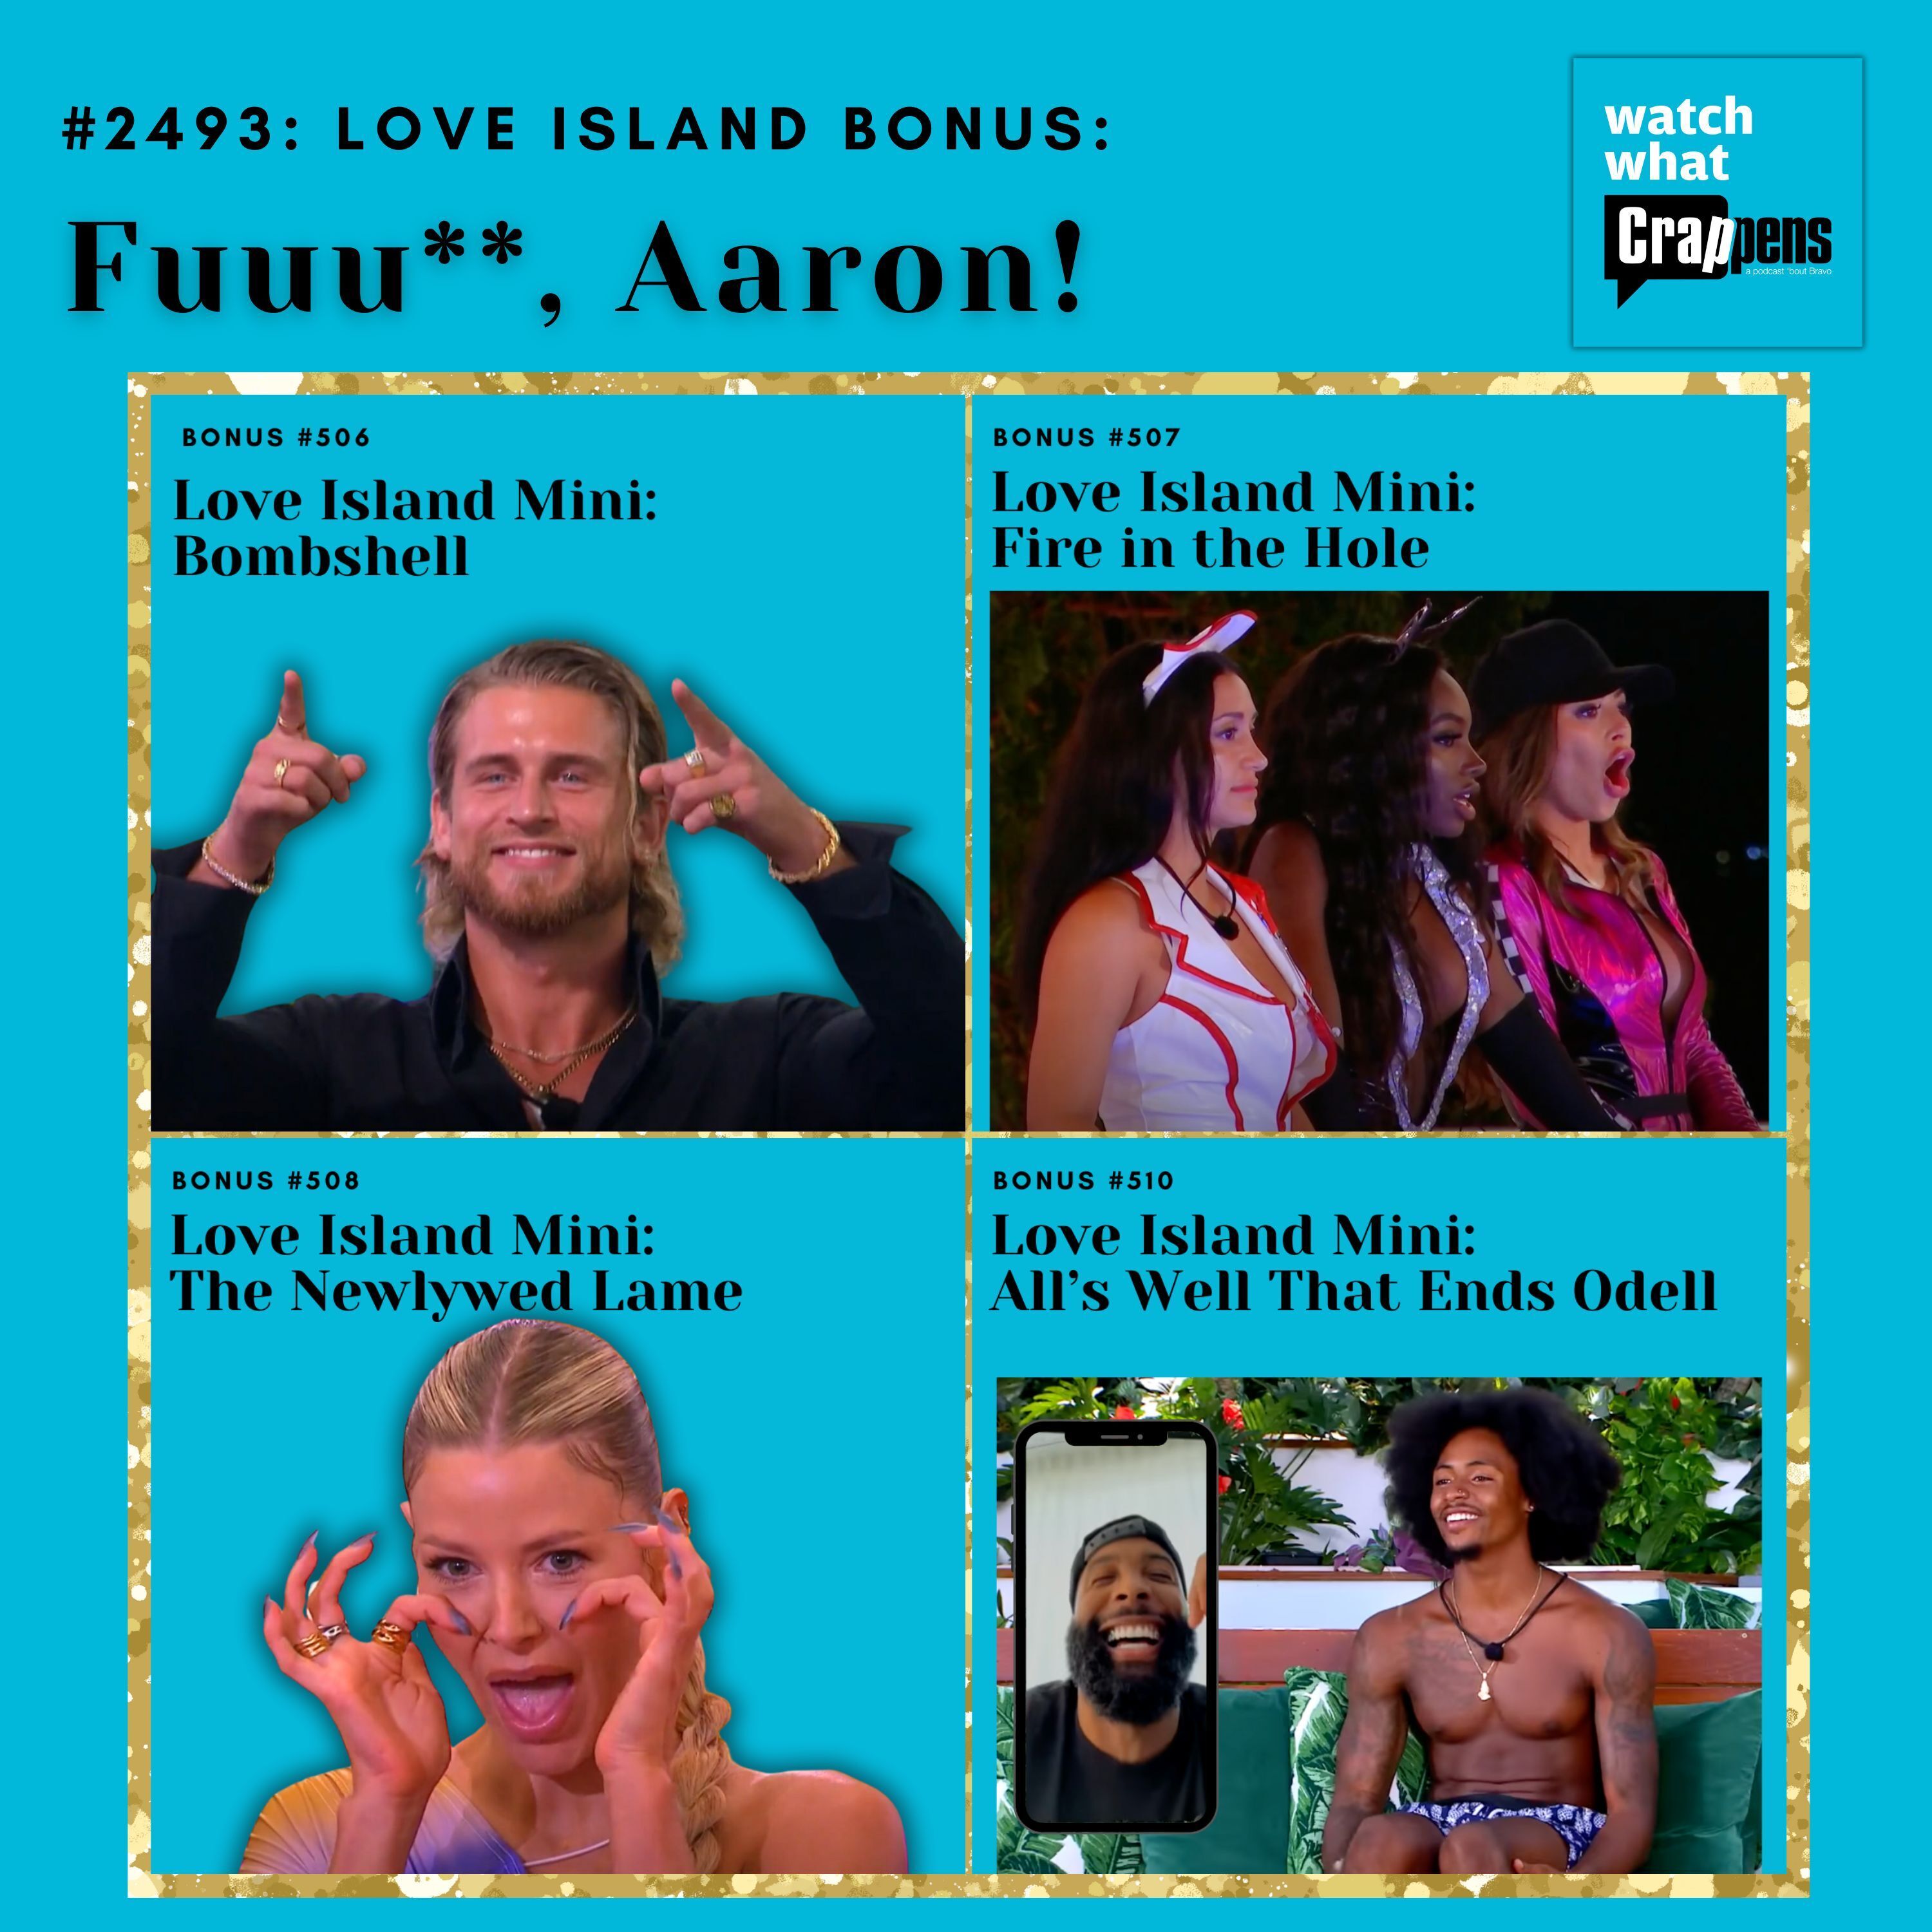 #2493: Love Island Bonus: Fuuu**, Aaron!